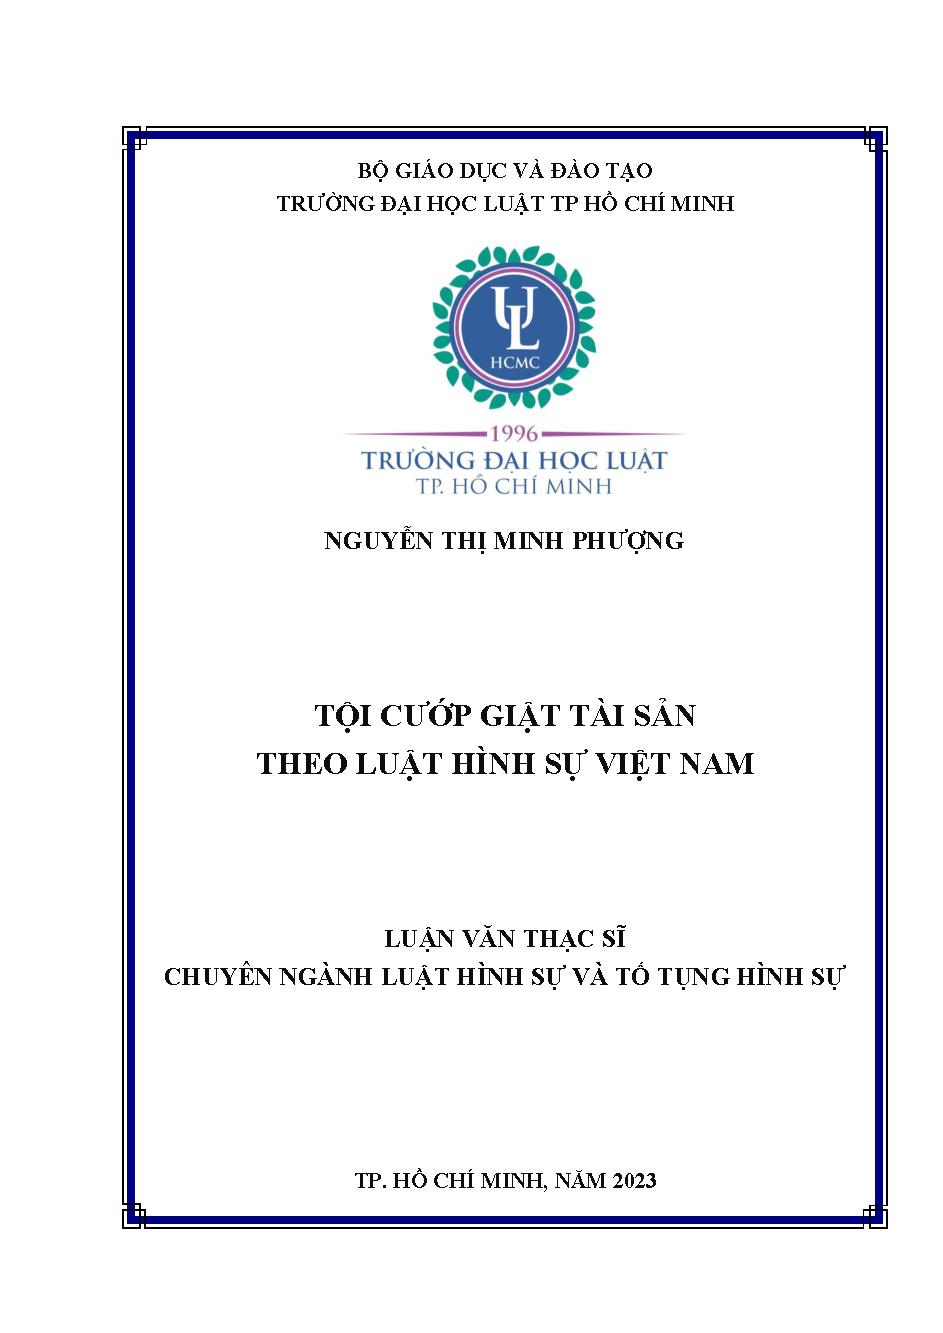 Tội cướp giật tài sản theo luật hình sự Việt Nam